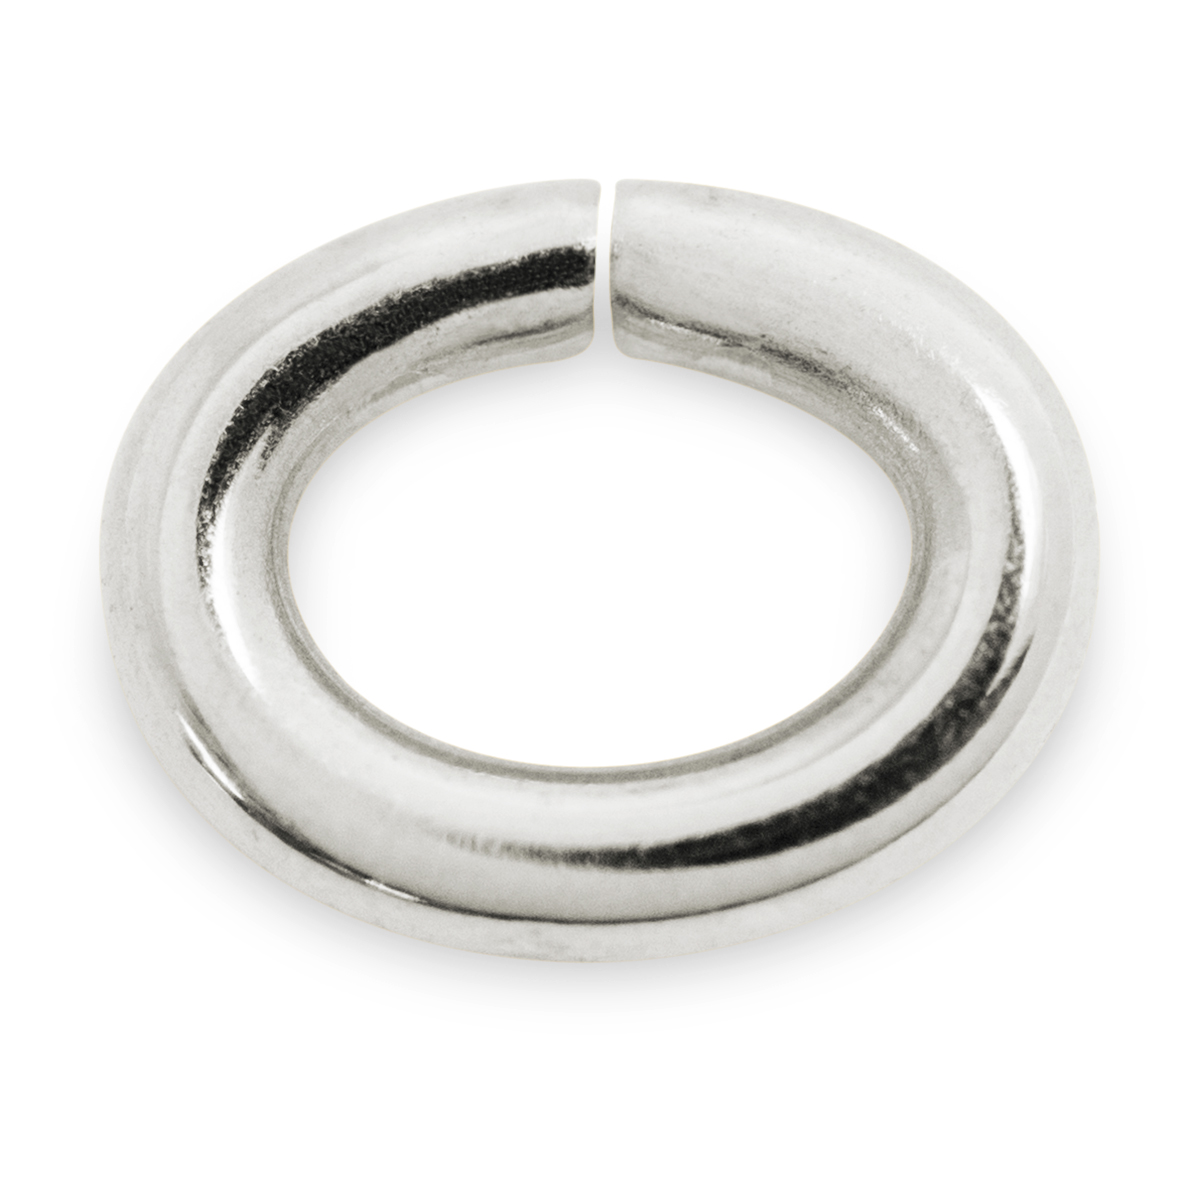 Binderinge, oval, 925/- Silber, Ø 9 mm, Stärke 1,3 mm